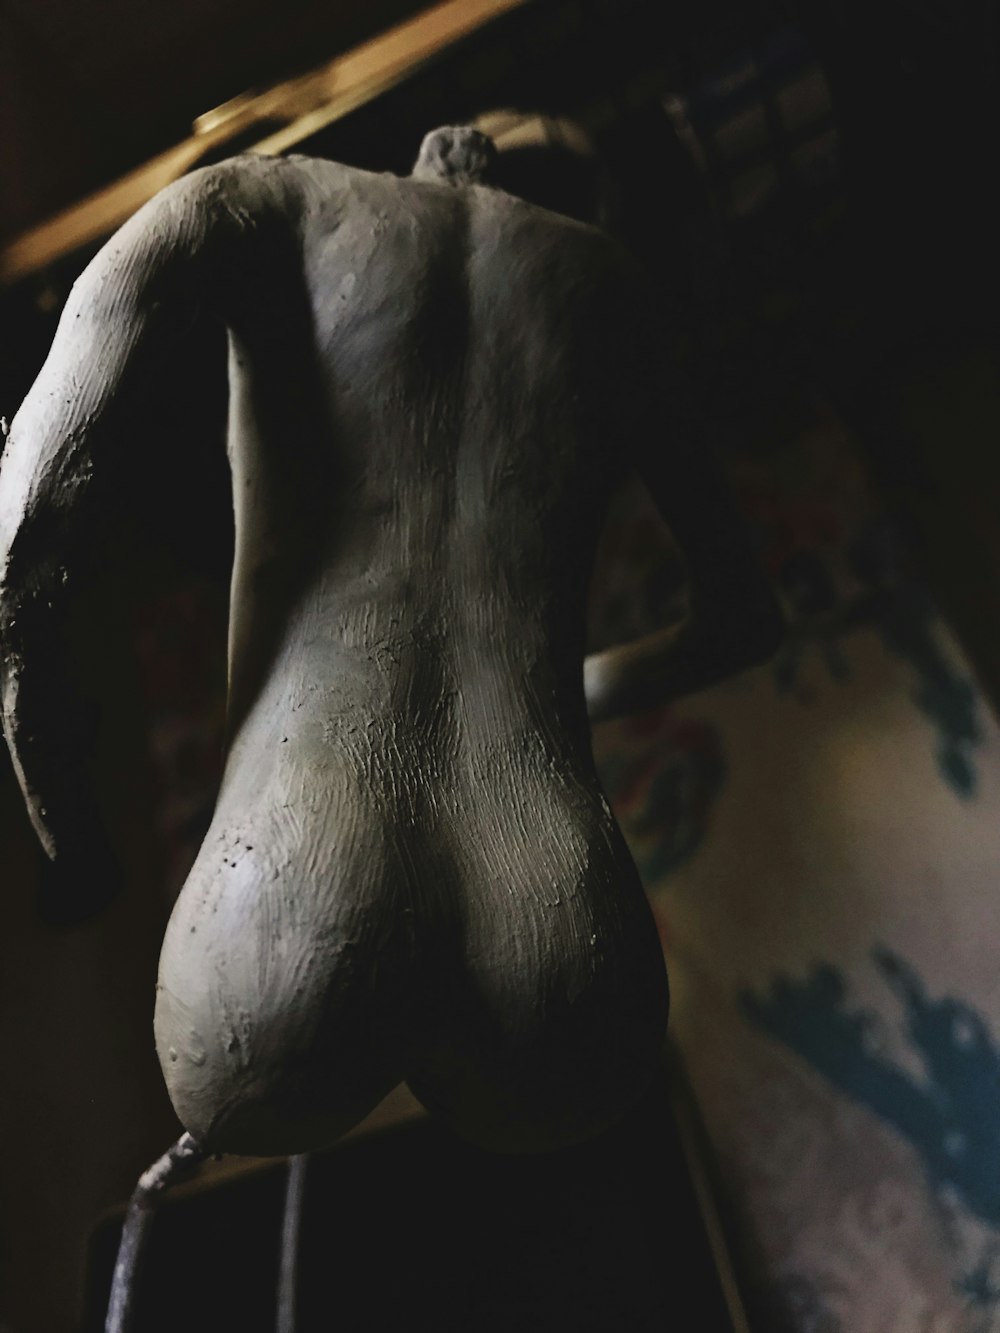 human body sculpture